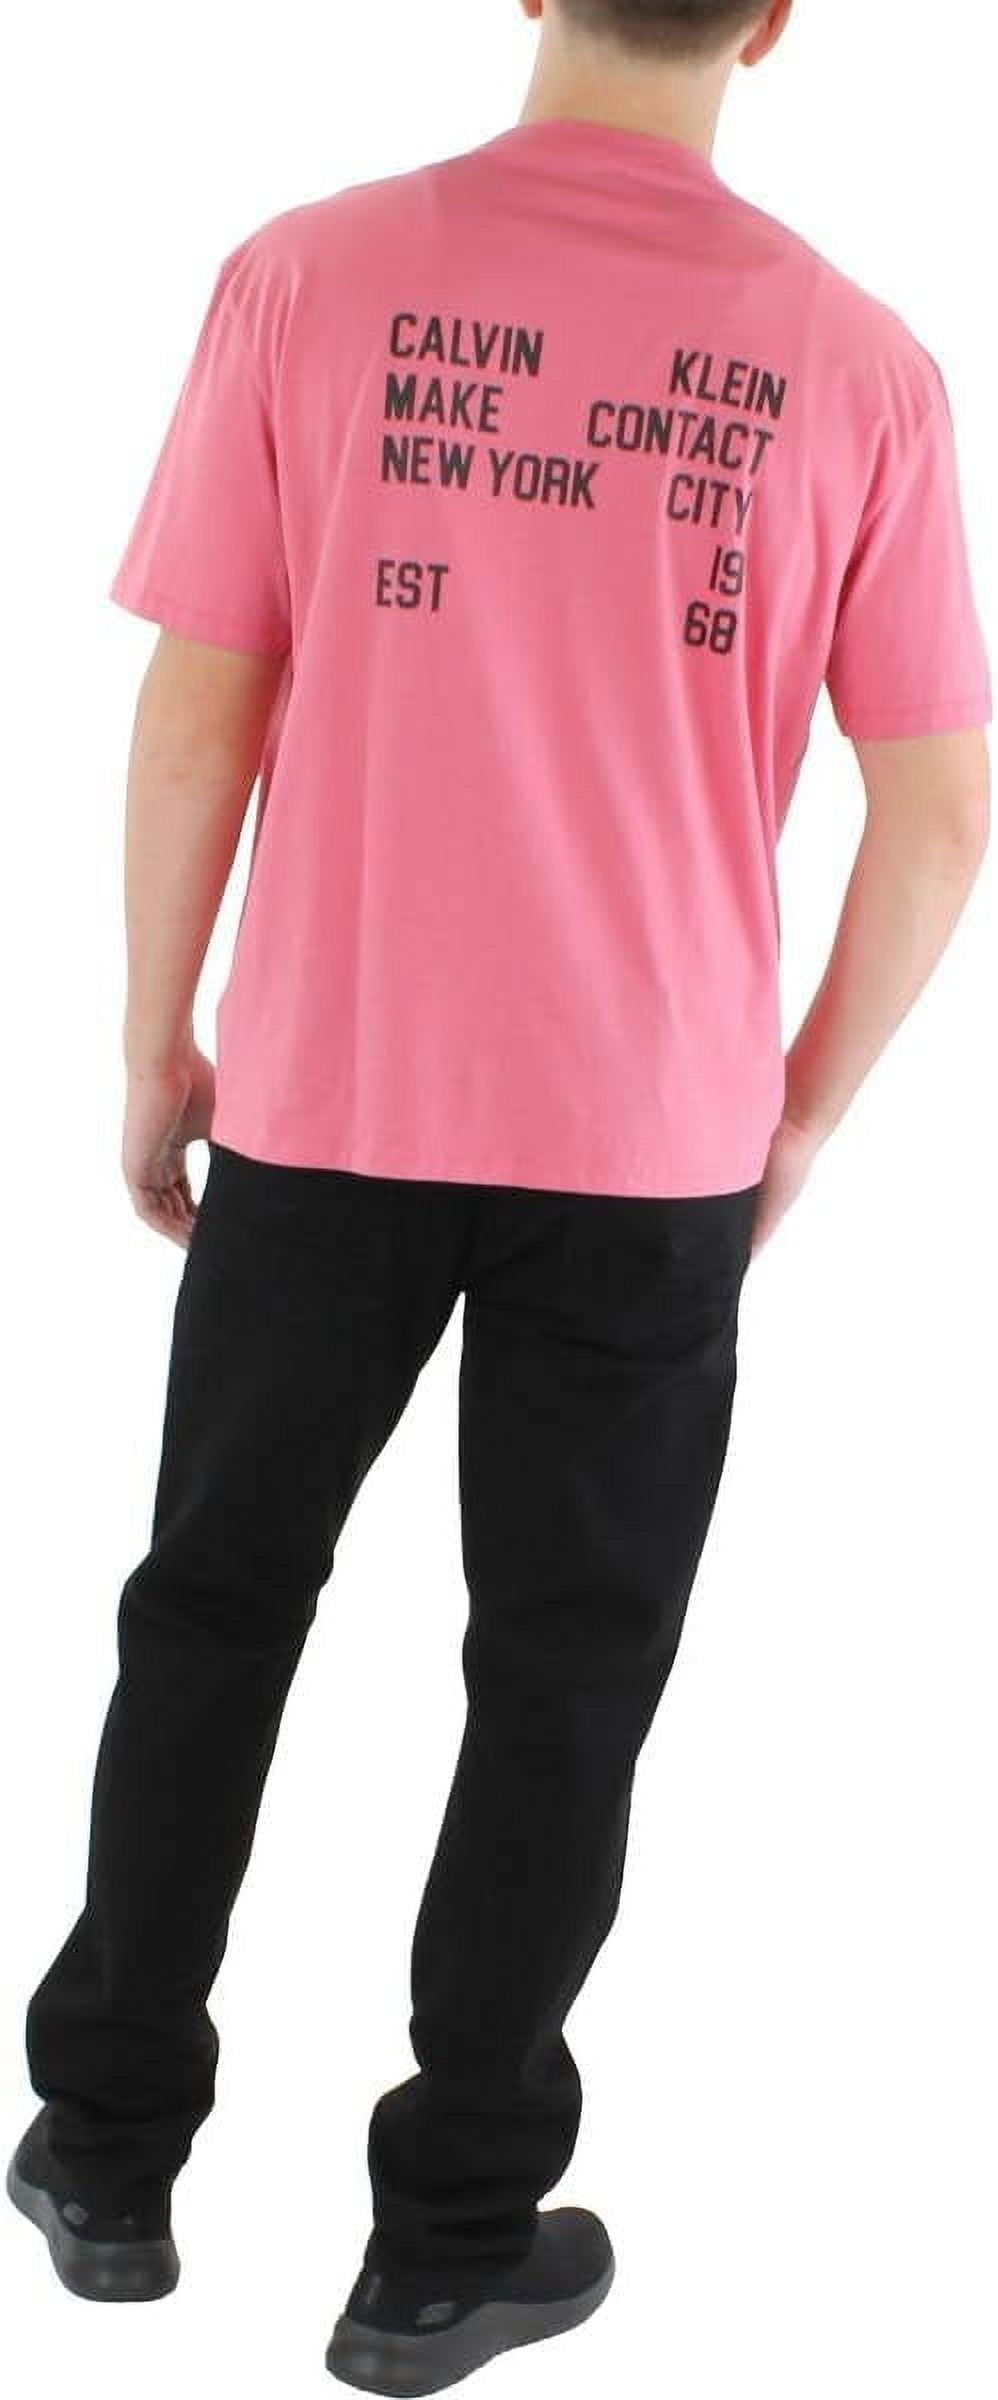 Van Heusen Men's Button Front Shirt Pink Size Medium